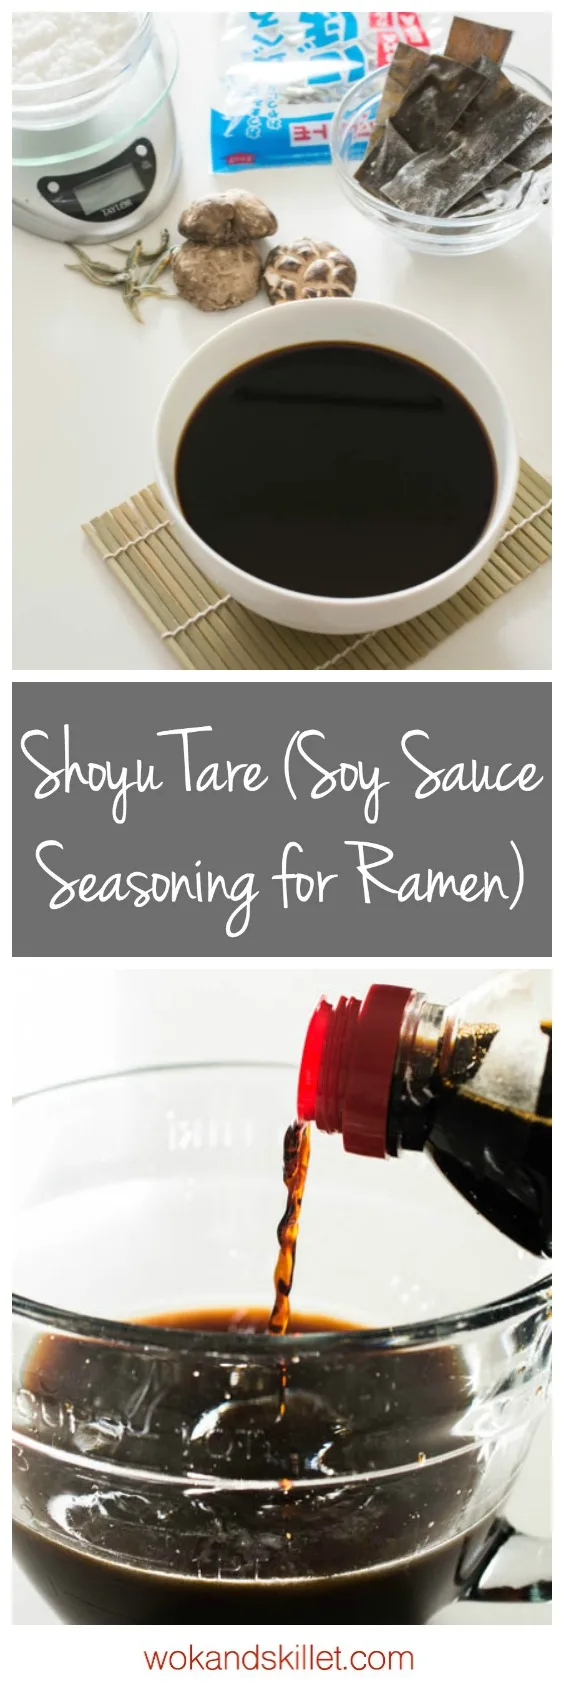 Velkommen fløjl beskytte Shoyu Tare (Soy Sauce Seasoning for Ramen) - Wok & Skillet